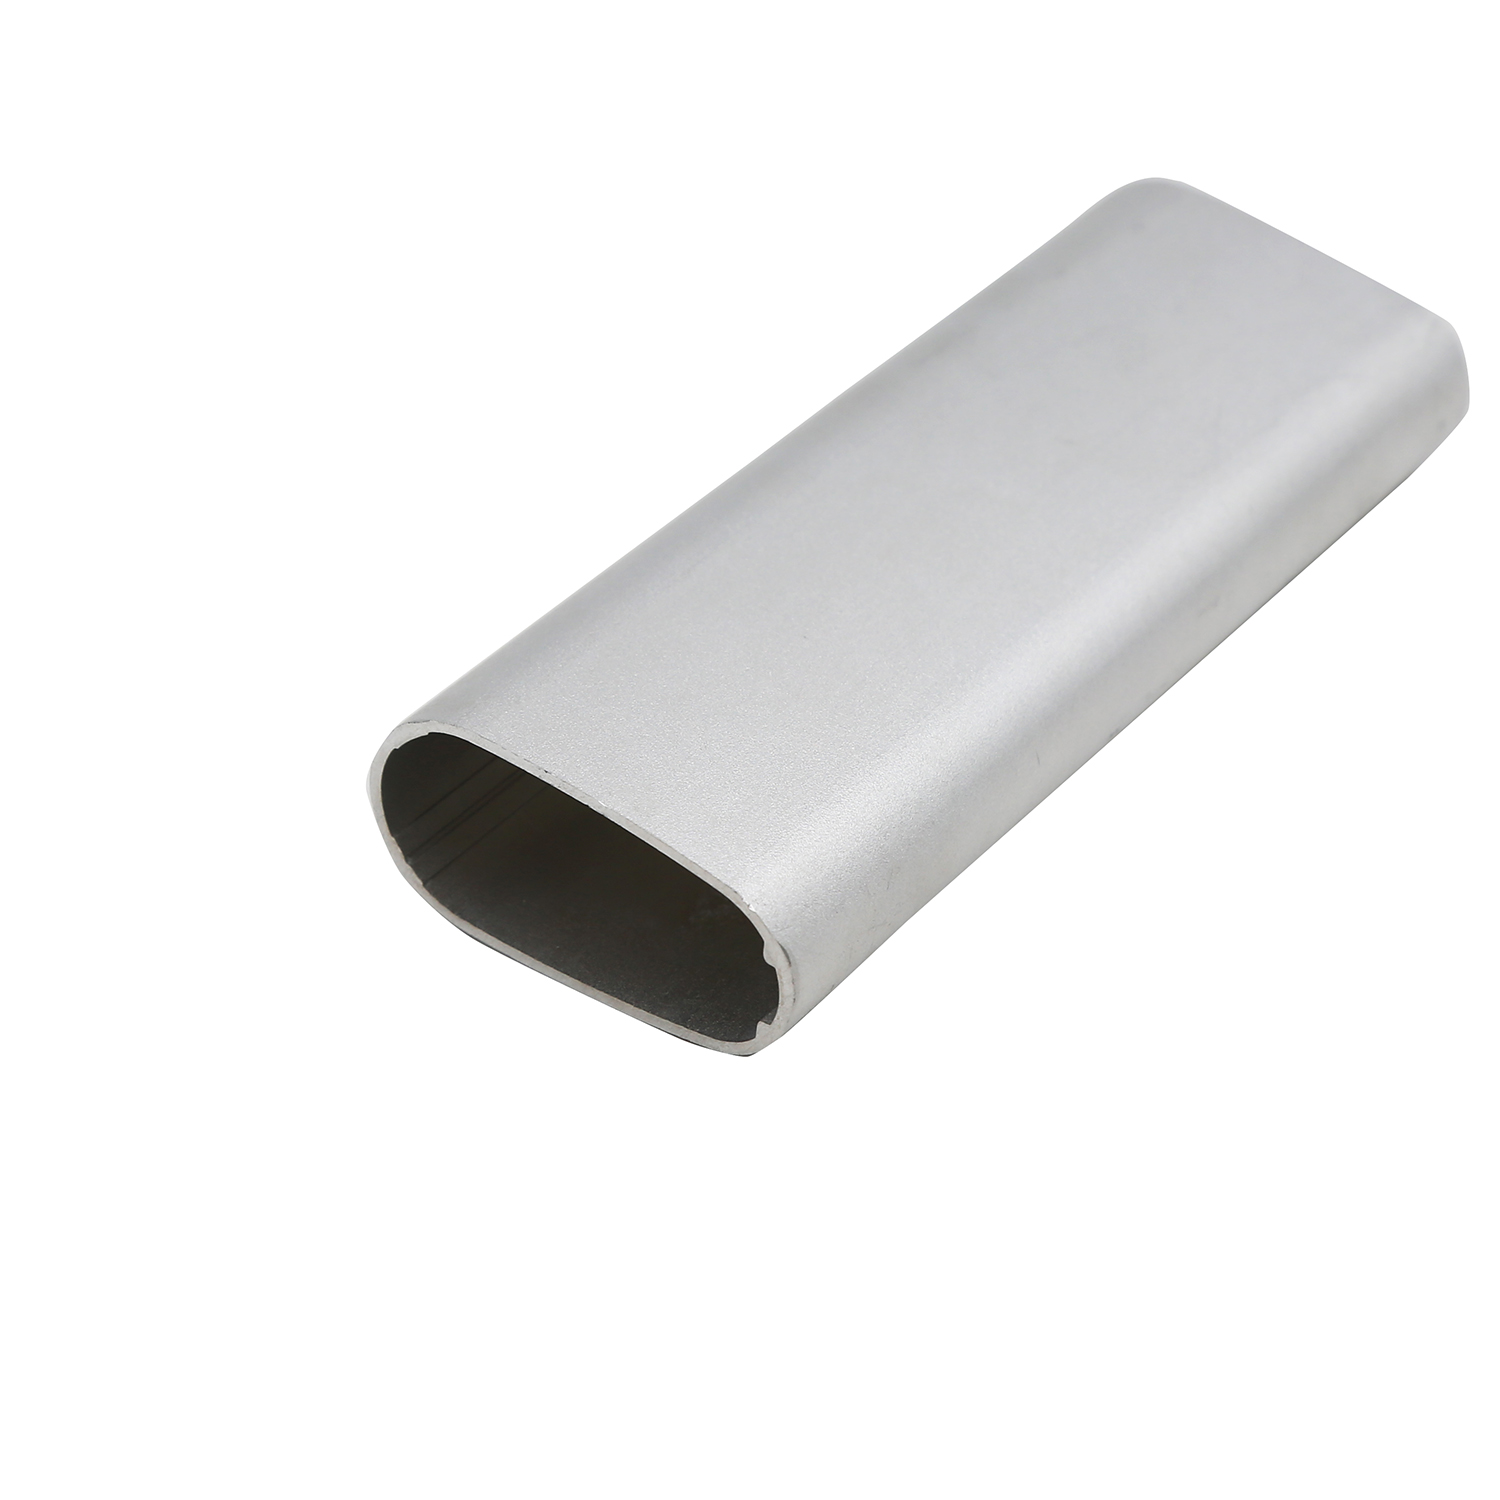 Perfil de extrusão de alumínio para tubos industriais